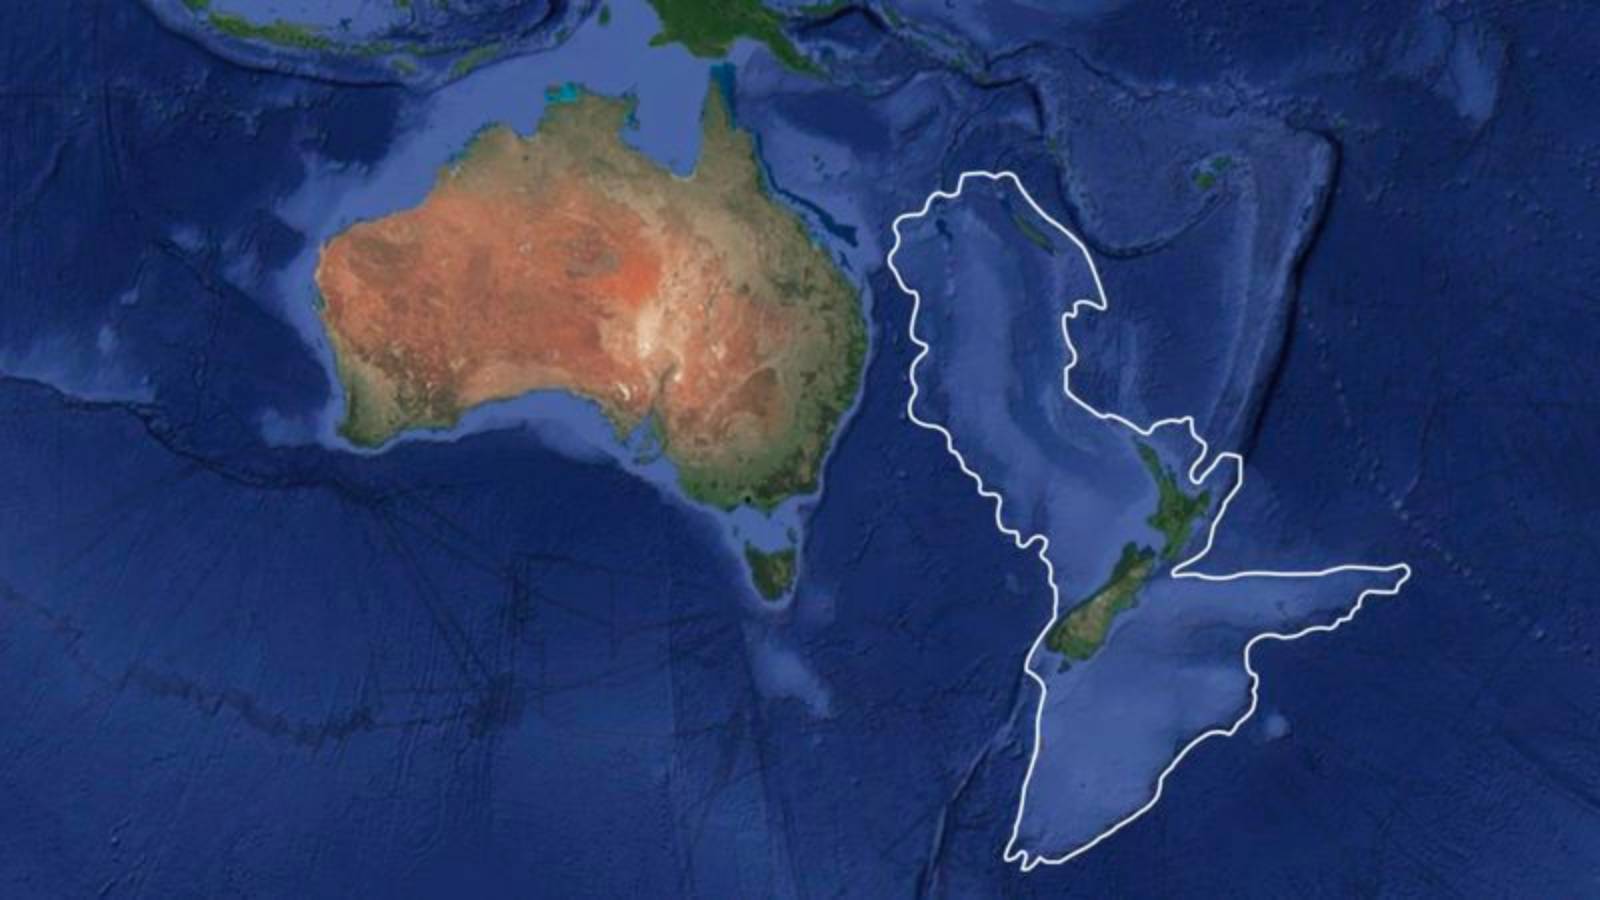 'Kayıp sekizinci kıta' Zelandiya birinci defa nasıl haritalandırıldı, sonuçları ne olabilir?